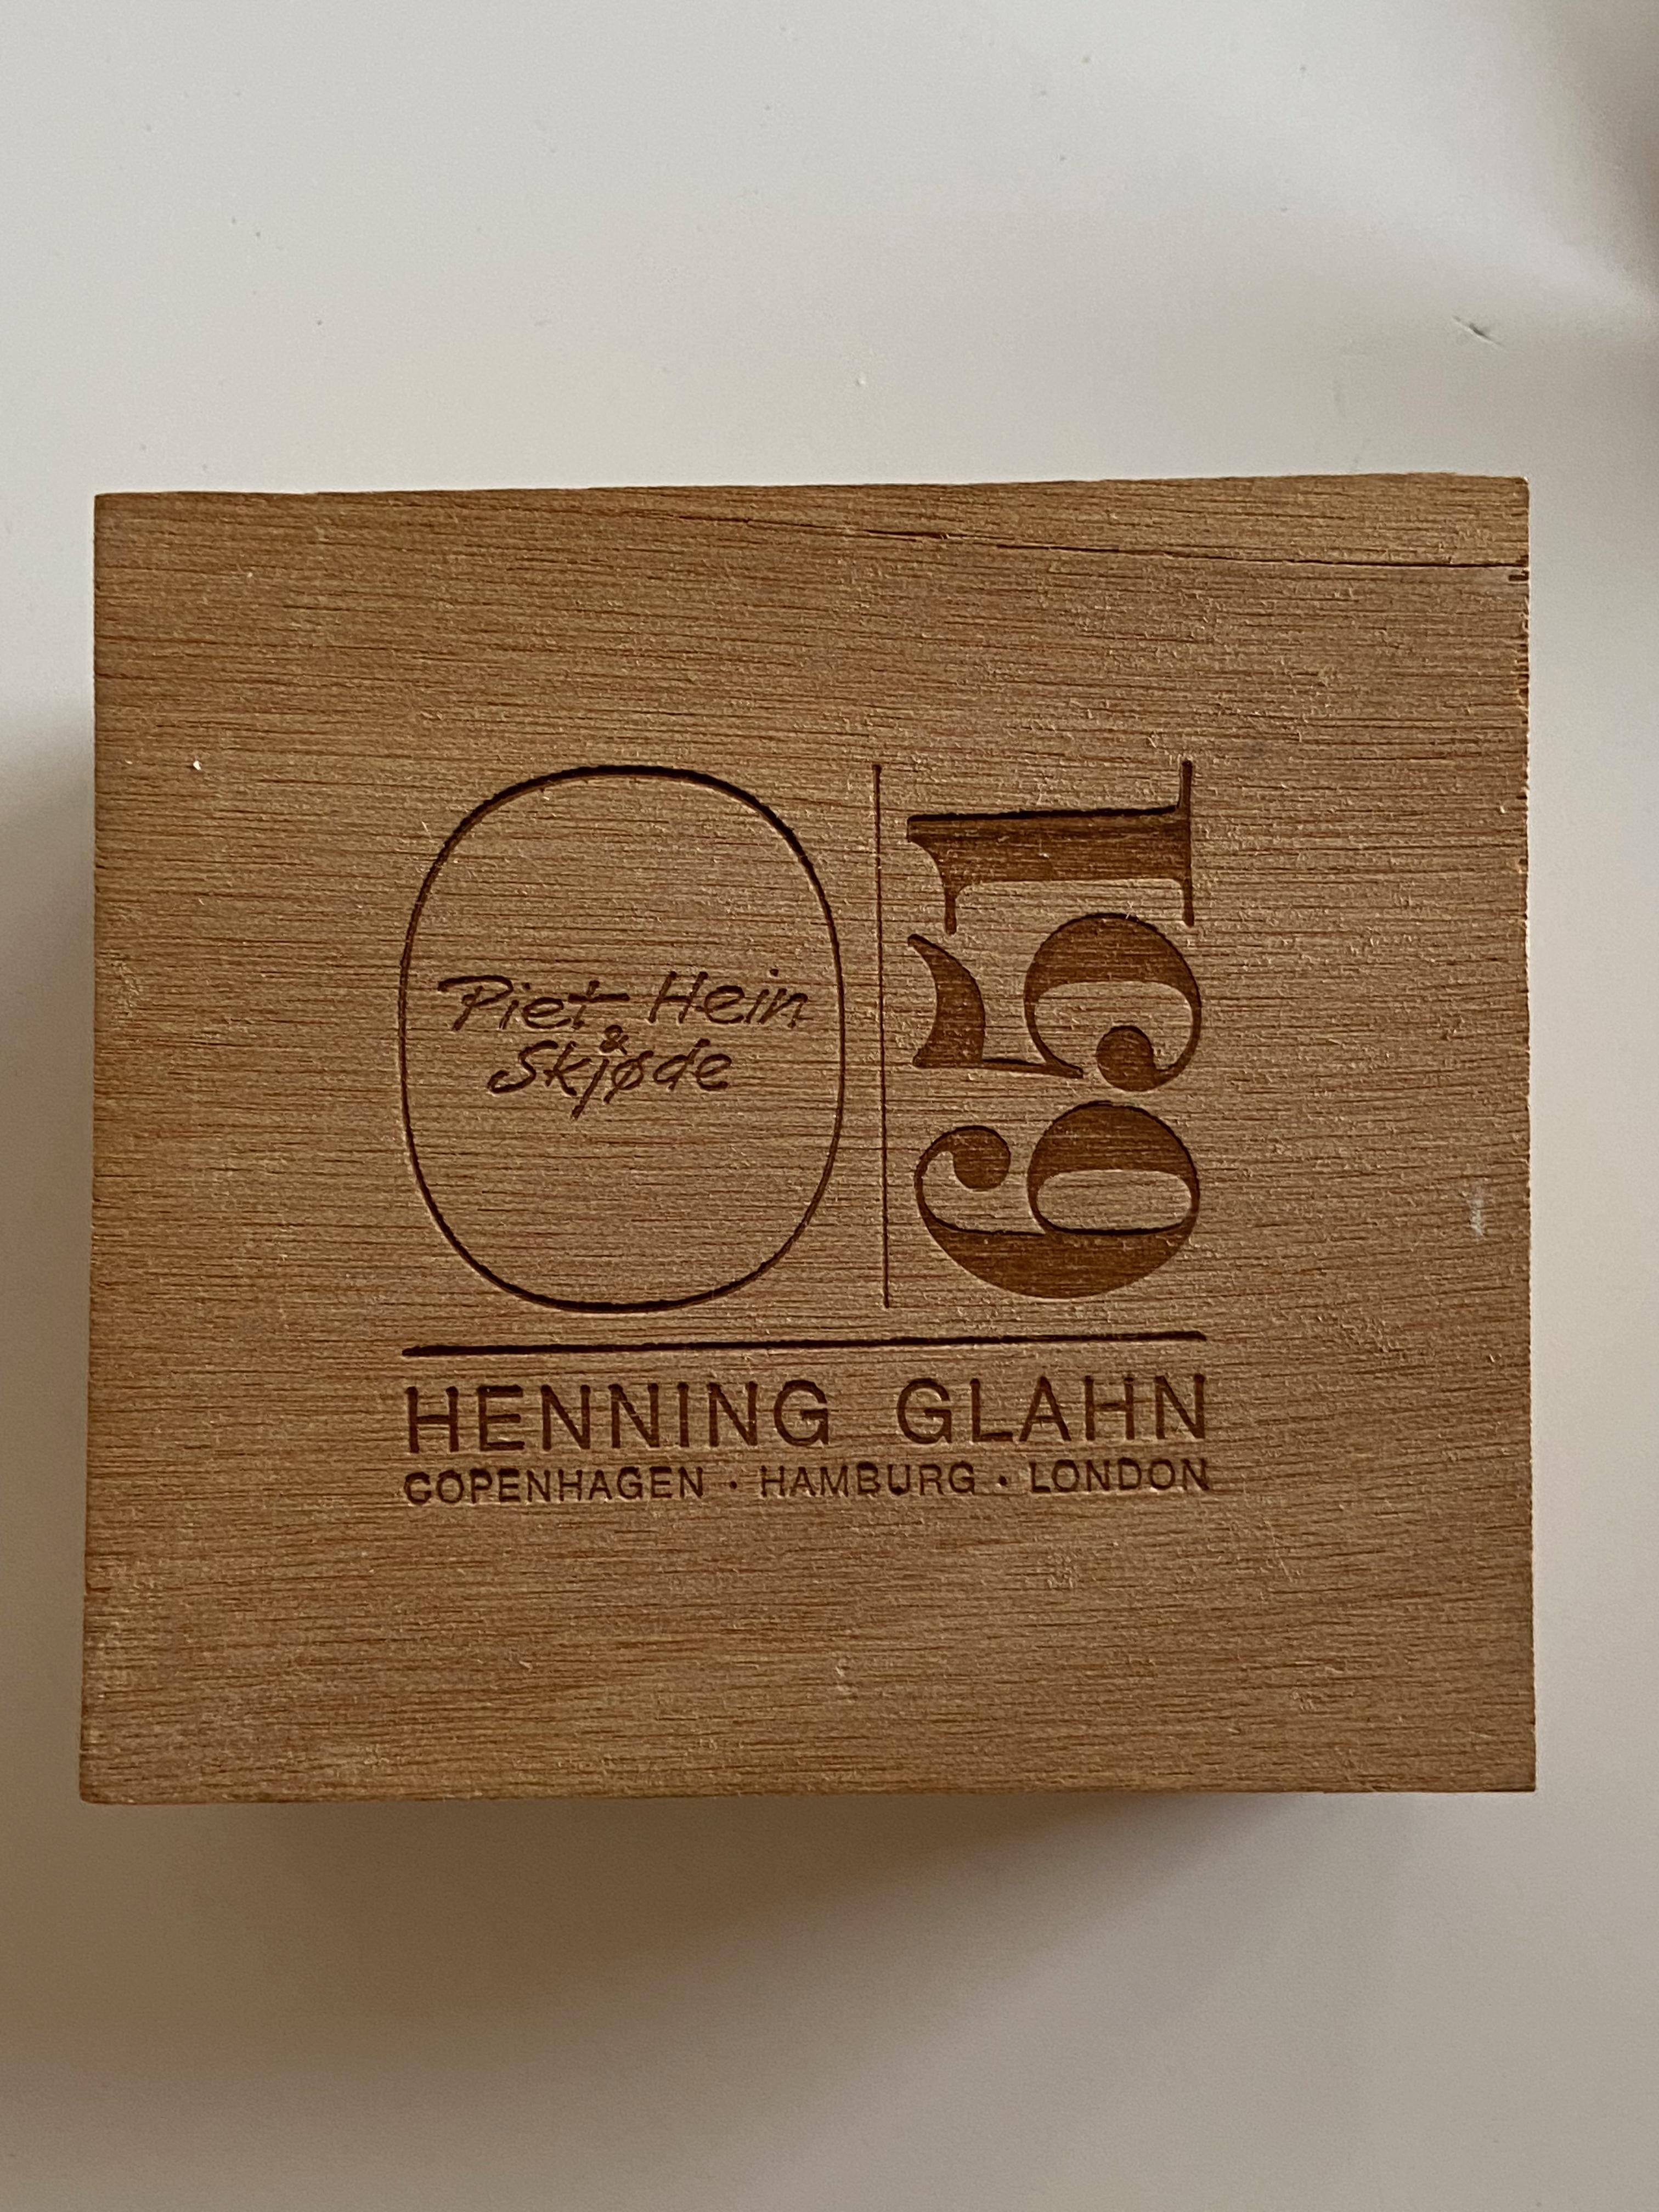 Piet Hein super egg avec pochette en cuir, livret et boîte d'origine. Le super œuf est en laiton massif produit par Henning Glahn, Danemark. Prix de l'ensemble.
   